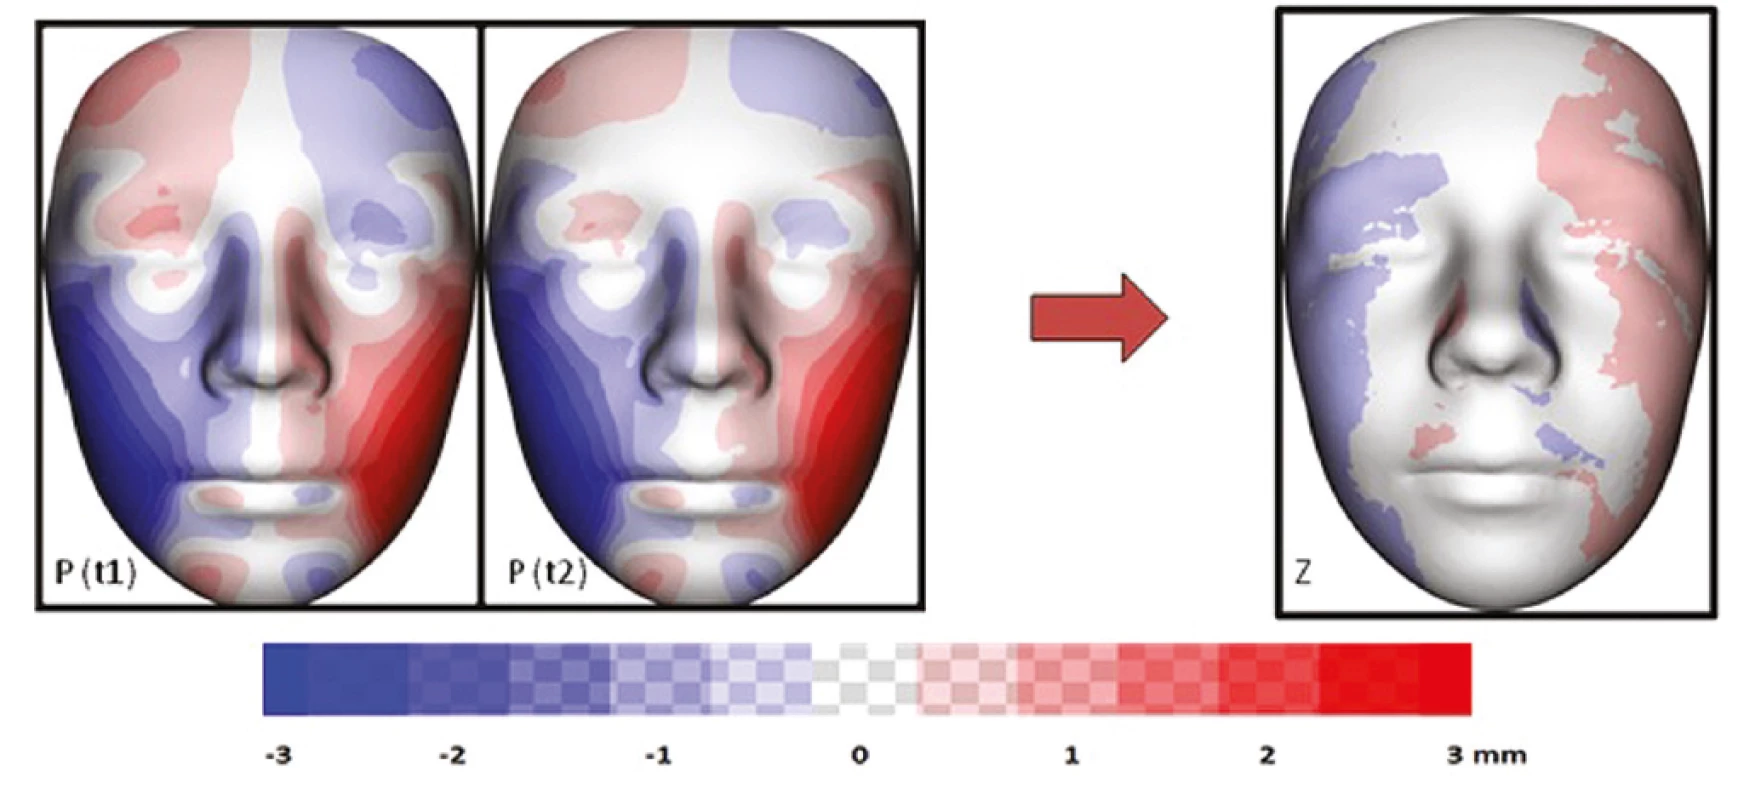 Vizualizace znázorňující
průměrnou individuální
asymetrii všech sledovaných
pacientů s OAVS v čase
t1 a t2 (P); barevná mapa
znázorňující změnu (v mm)
průměrné individuální
asymetrie mezi t1 a t2 (Z)<br>
Fig. 7
Visualization showing
the average individual
asymmetry of all OAVS patients
monitored at time t1 and t2
(P); a color map showing the
change (in mm) of the average
individual asymmetry between
t1 and t2 (Z)